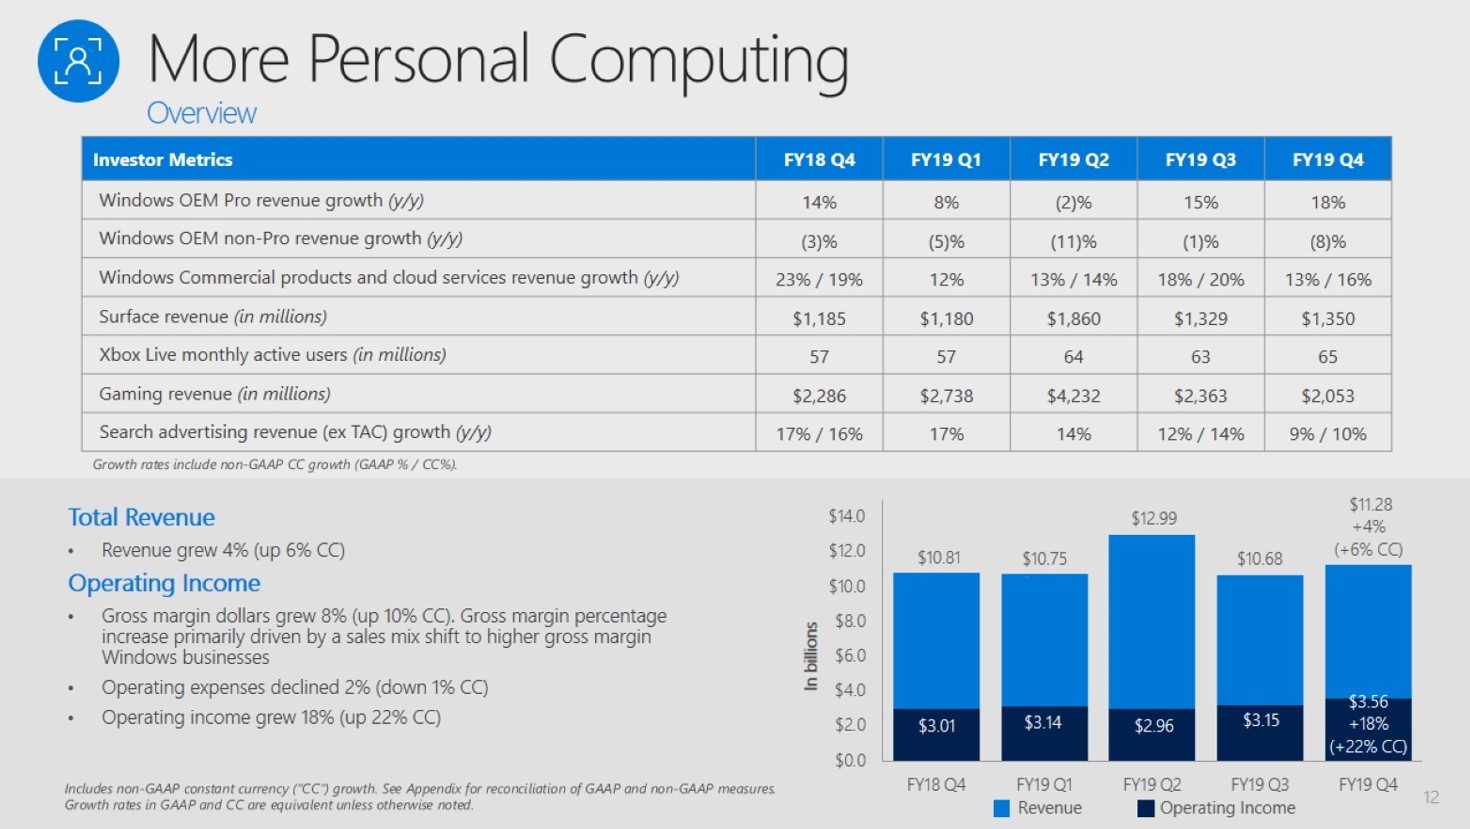 微软Q4财报：收入337亿美元，Xbox硬件收入下滑 48%-游戏价值论